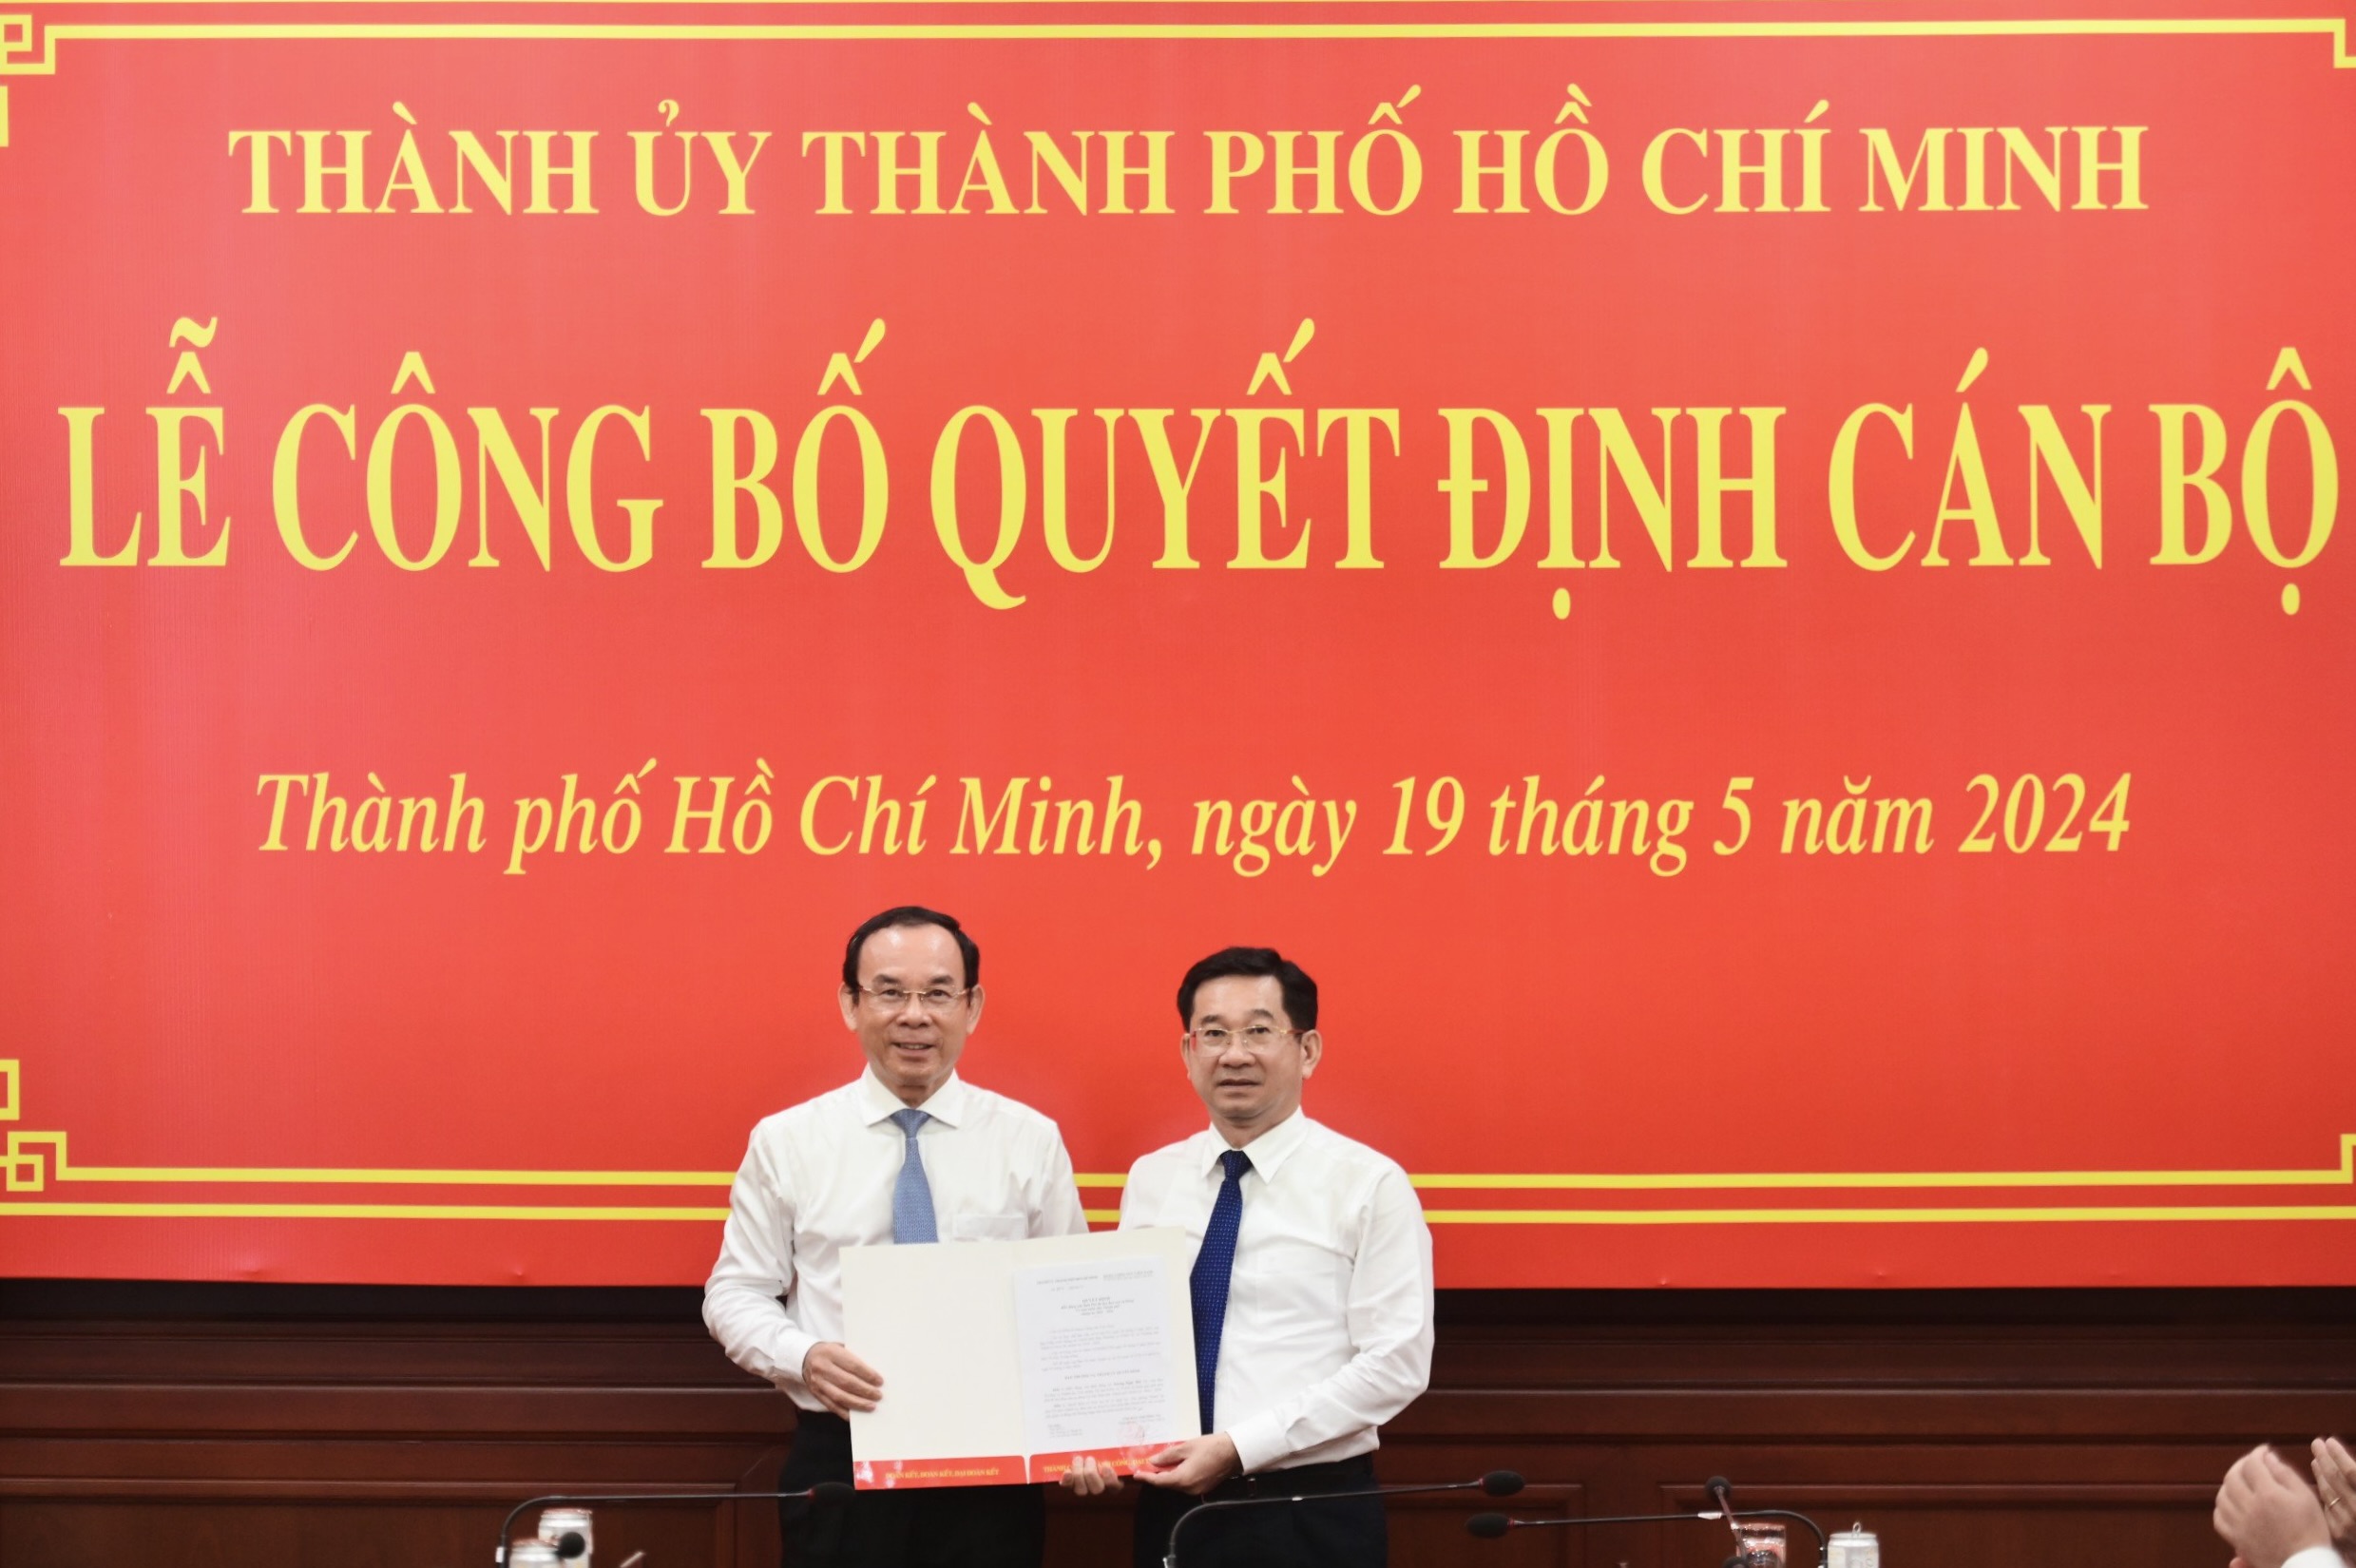 Bí thư Nguyễn Văn Nên trao quyết định điều động, chỉ định ông Dương Ngọc Hải tham gia, giữ chức Phó bí thư Ban cán sự Đảng UBND TP.HCM nhiệm kỳ 2021 - 2026